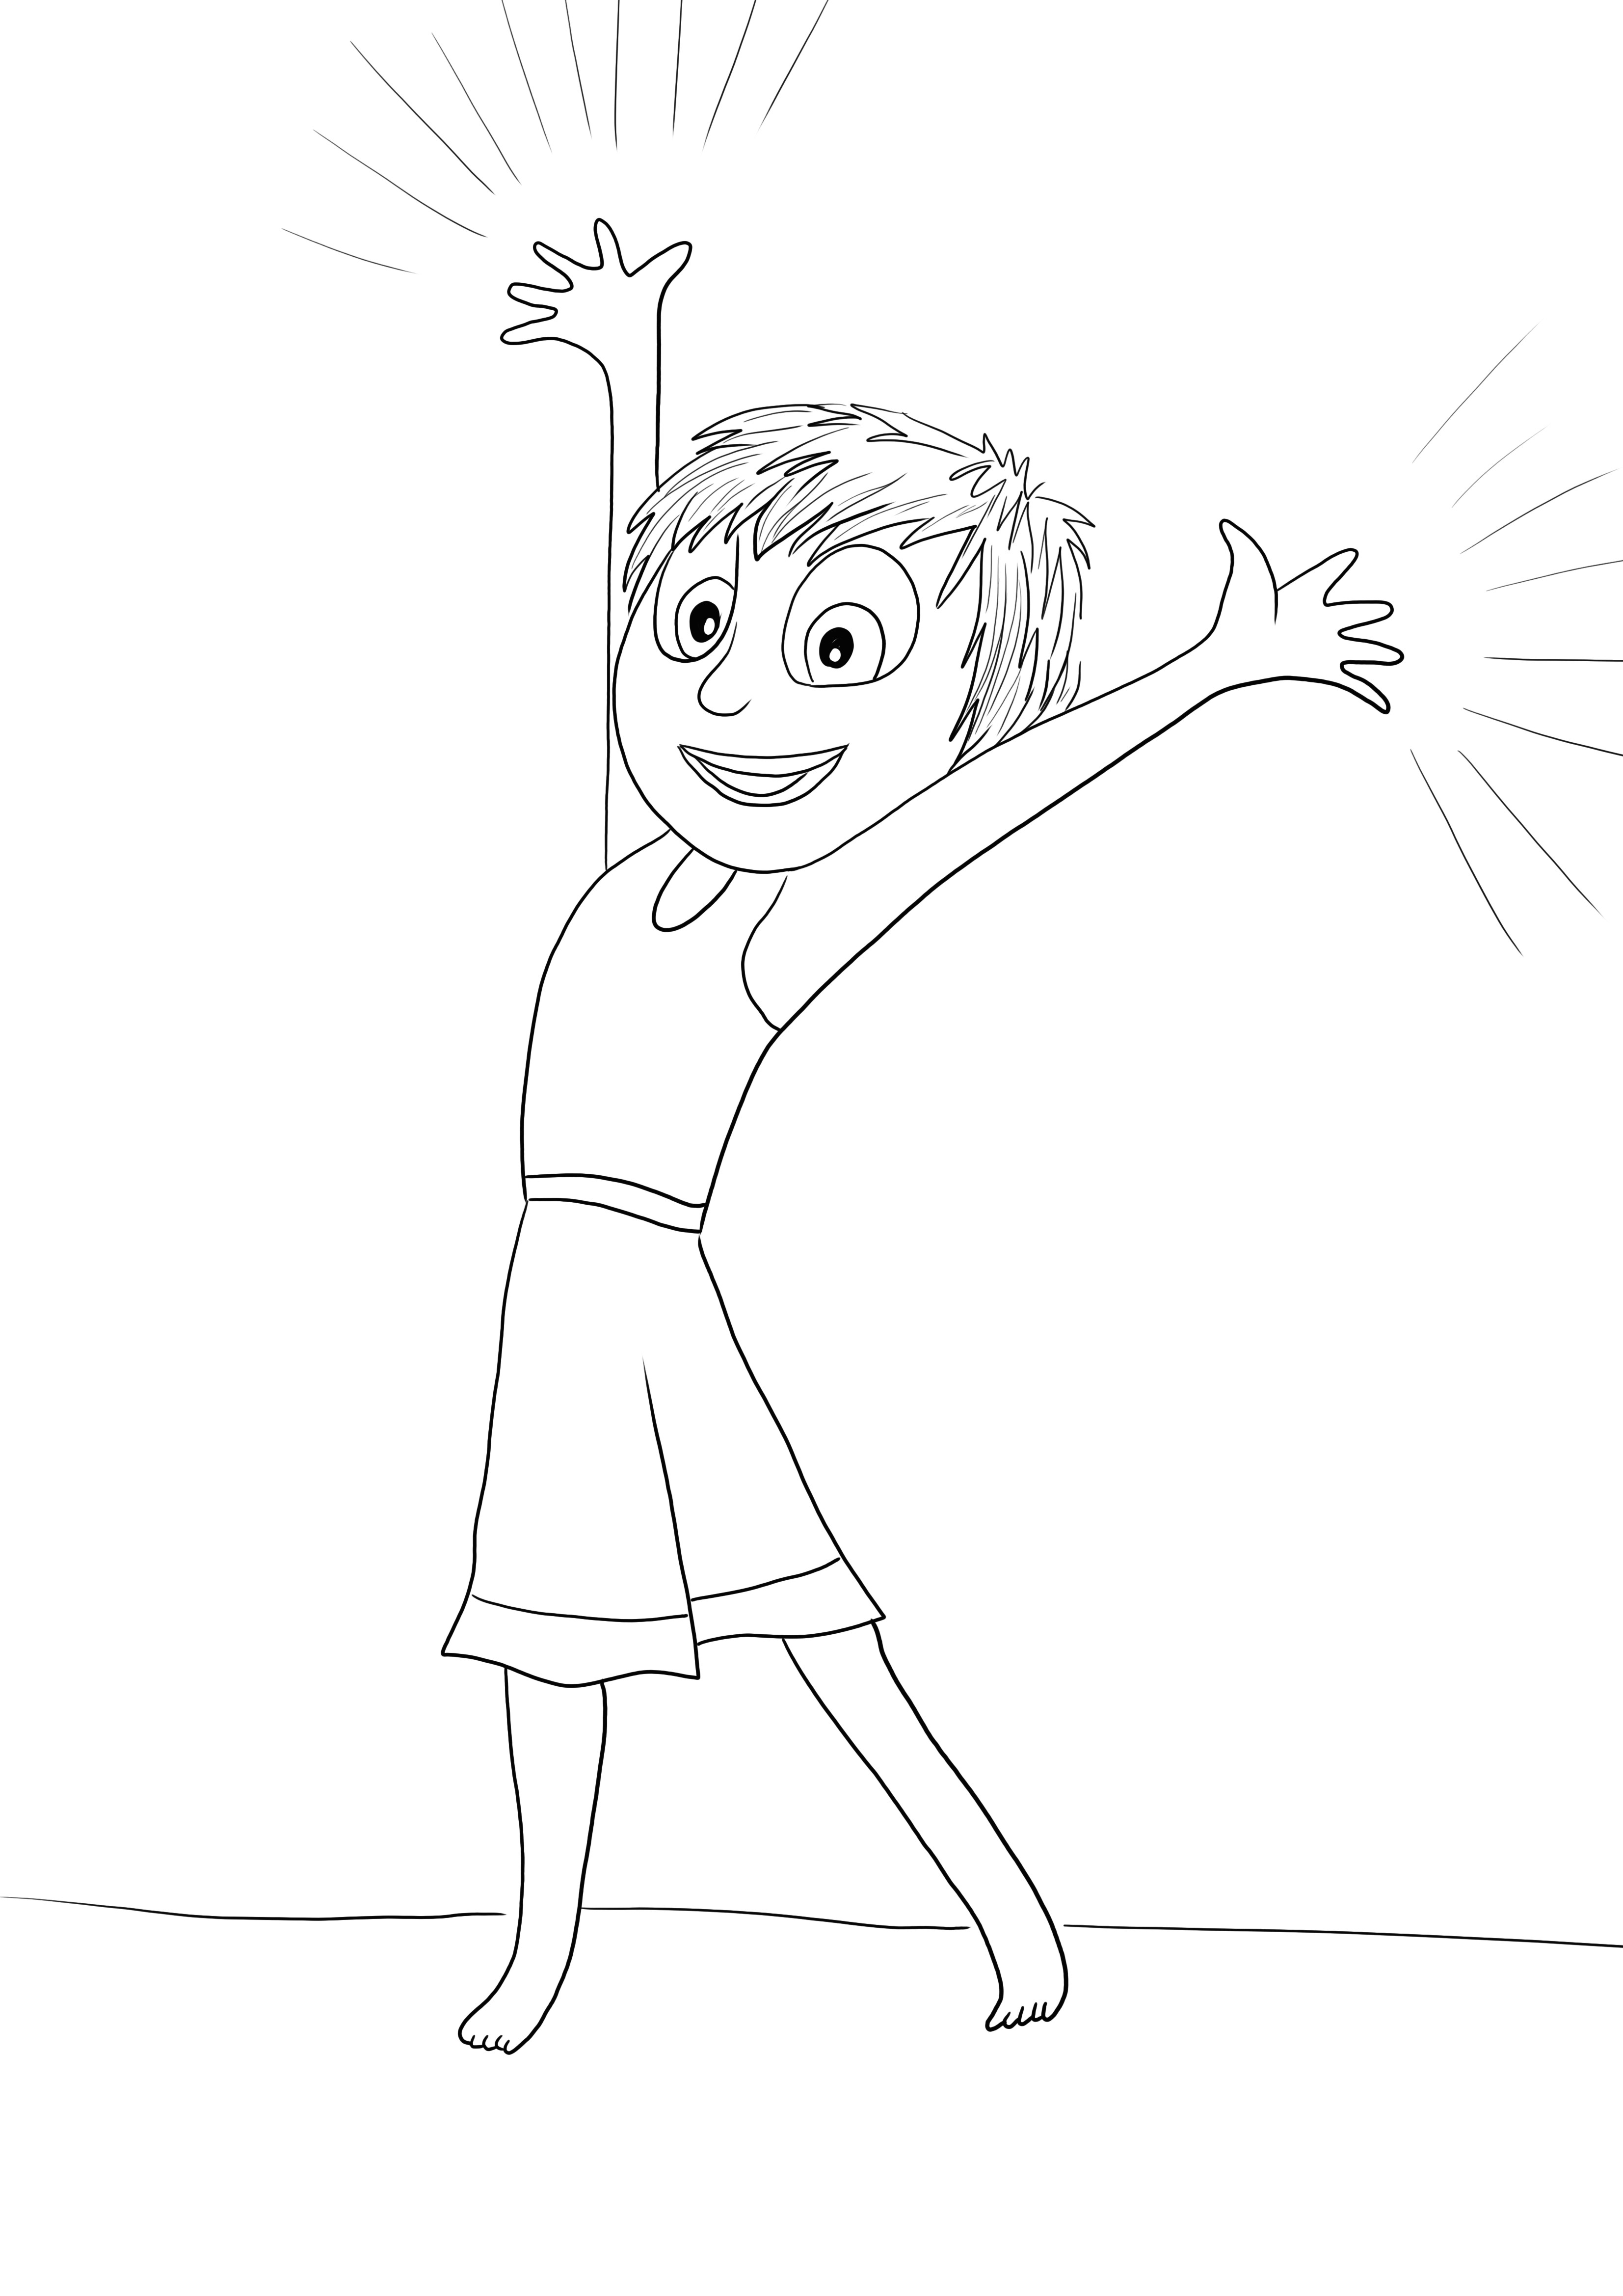 Çocuklar için ücretsiz renkli yazdırılabilir Ters Yüzden Mutlu Sevinç çizgi filmi